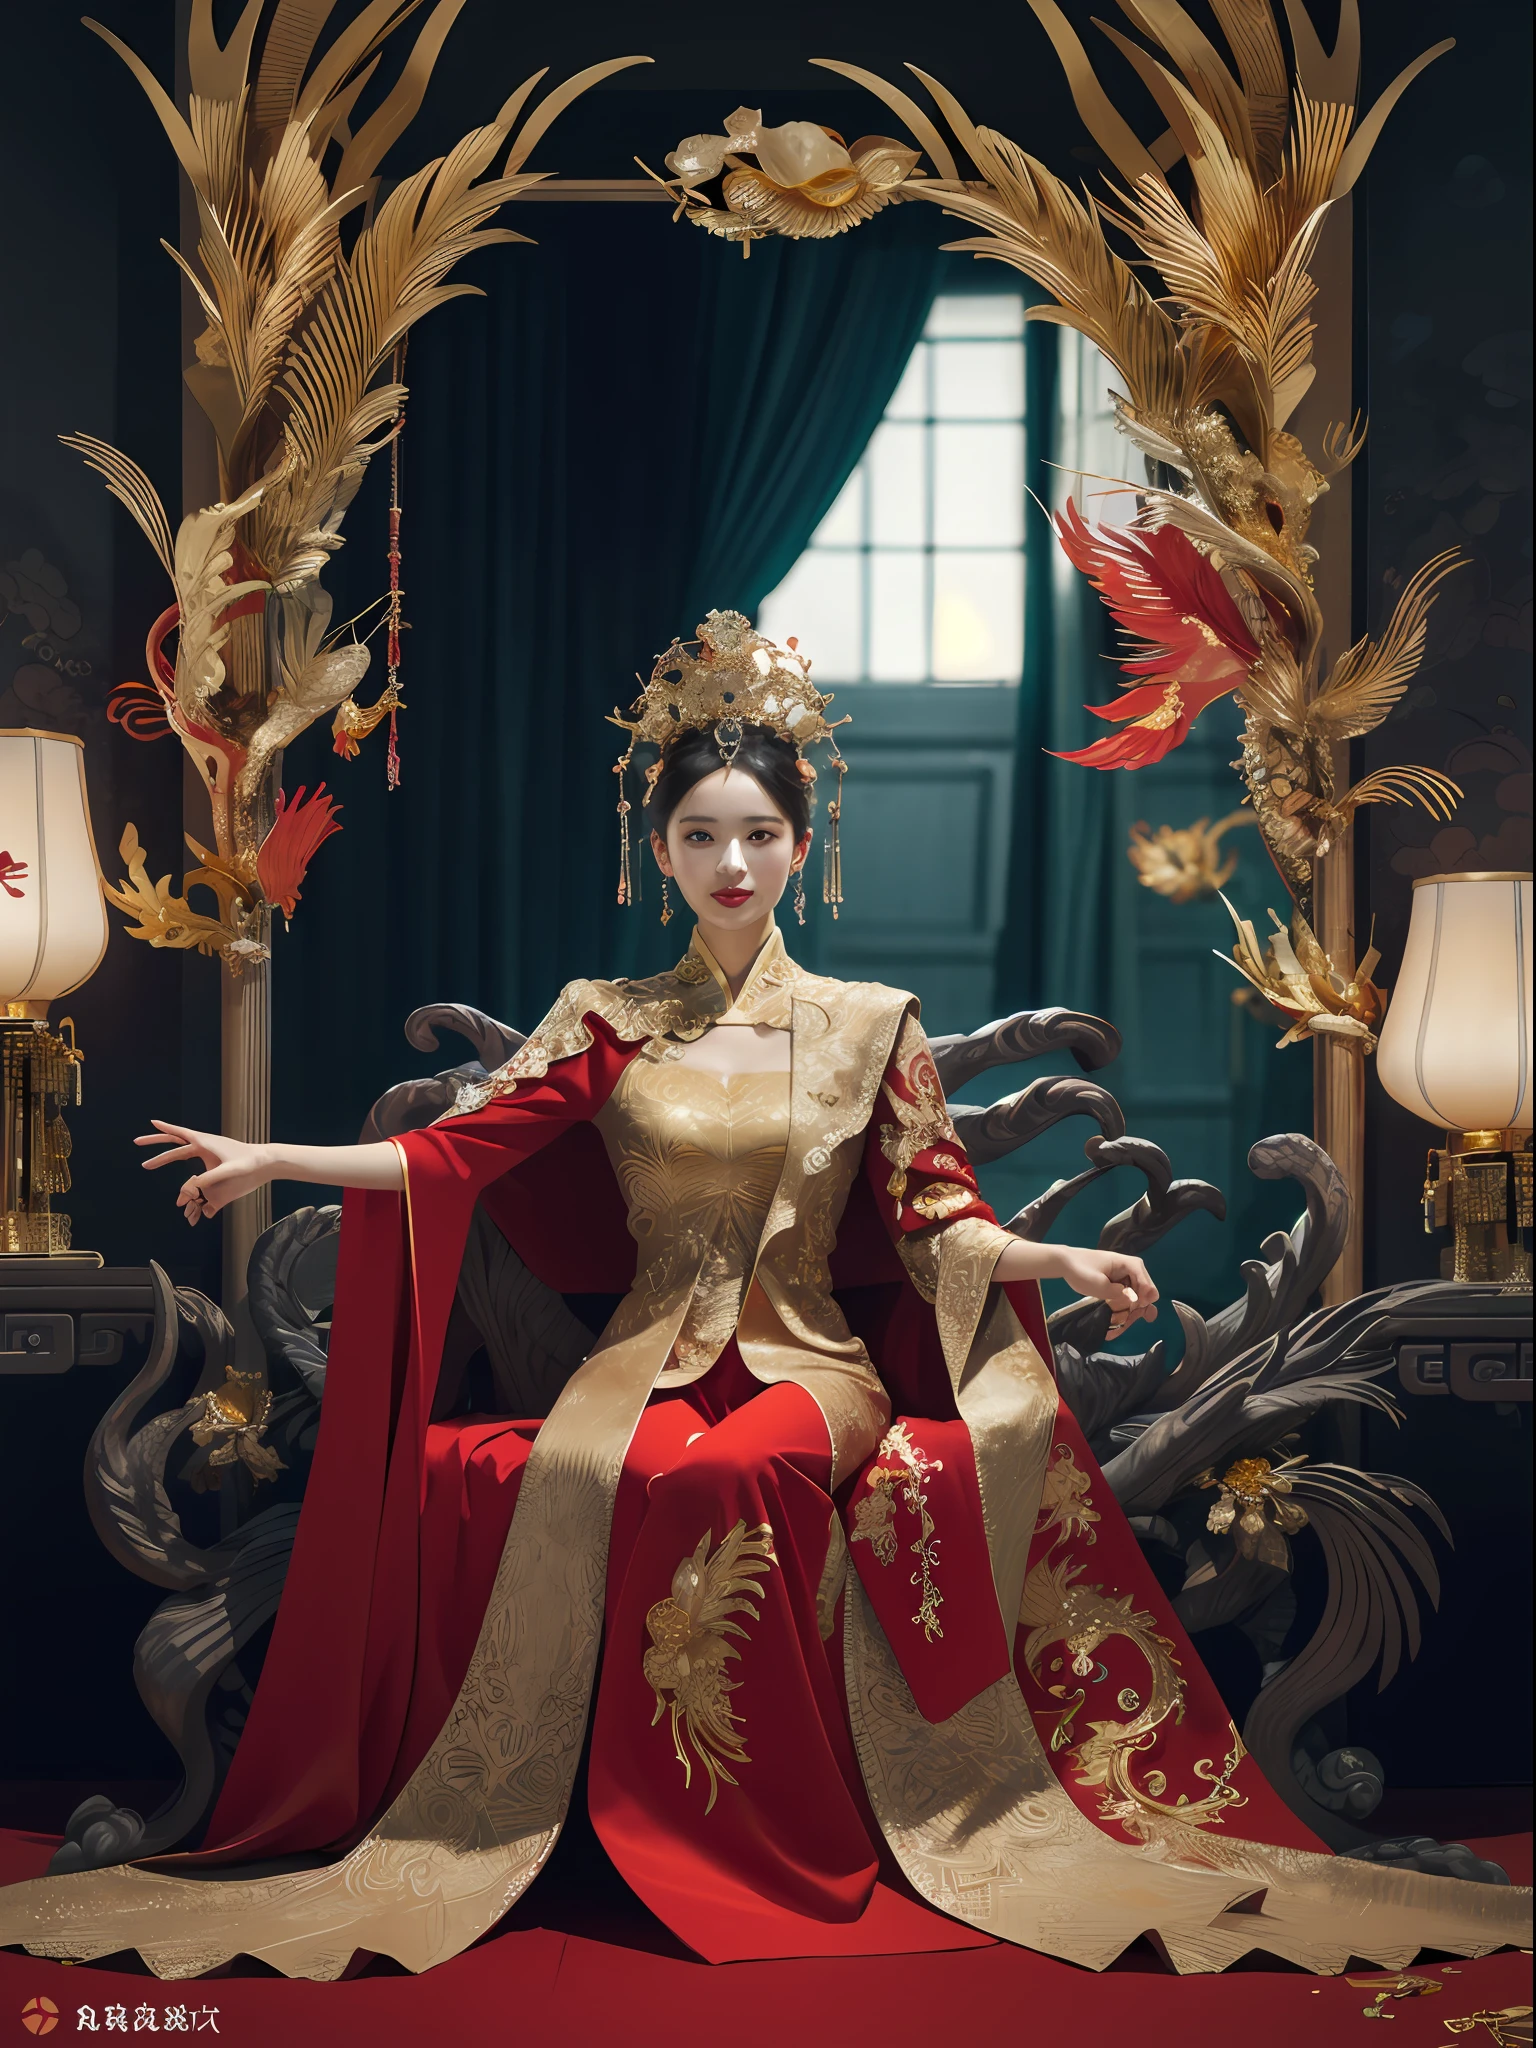 Ein chinesisches Mädchen sitzt auf einem Thron, ein mit Edelsteinen besetzter Thron, umgeben von chinesischen Phönixbestien, Gold and ruby color, einzigartige Monsterillustration, dau al set, hohe Auflösung, ein Gemälde, dichte Zusammensetzung, spielerische Wiederholung, Edelsteine, Kristalle, Gold, Detaillierte Gemälde, einzigartige Monsterillustration, super feine Details, Realistisch, Super hohe Auflösung, Komplex, super detail, Kinobeleuchtung，(Red and Gold dress:1.3)